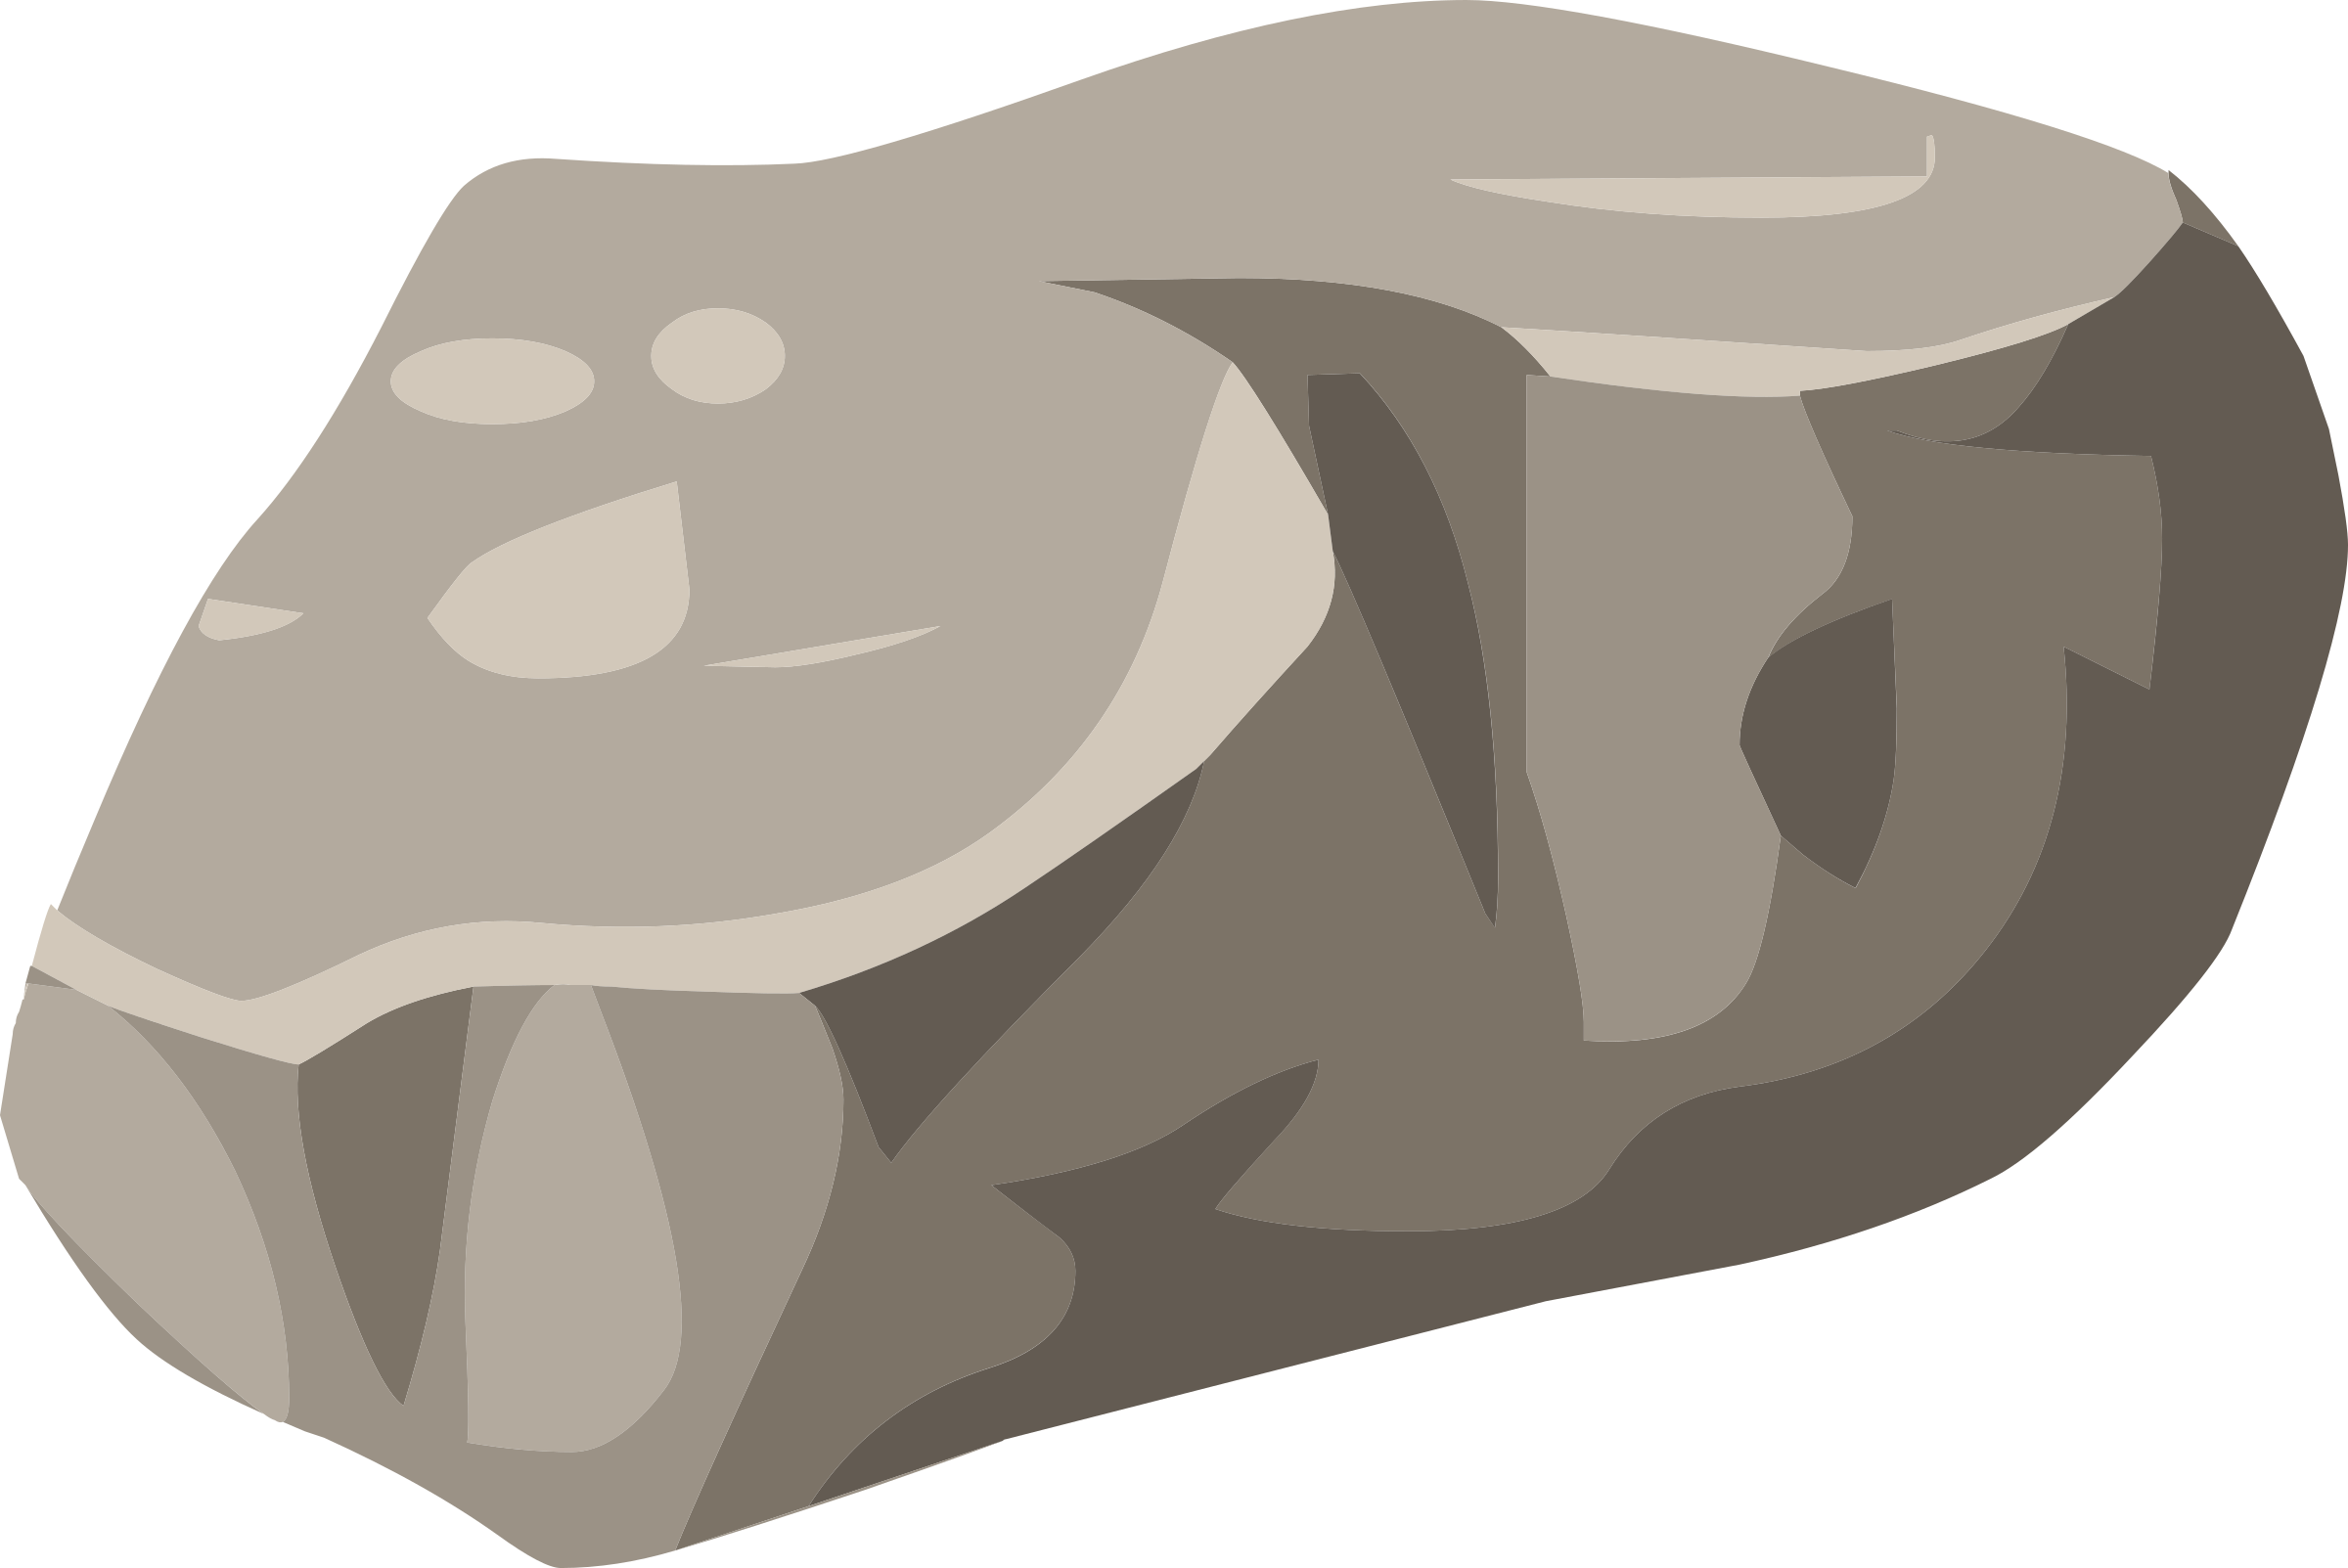 boulder clipart cartoon